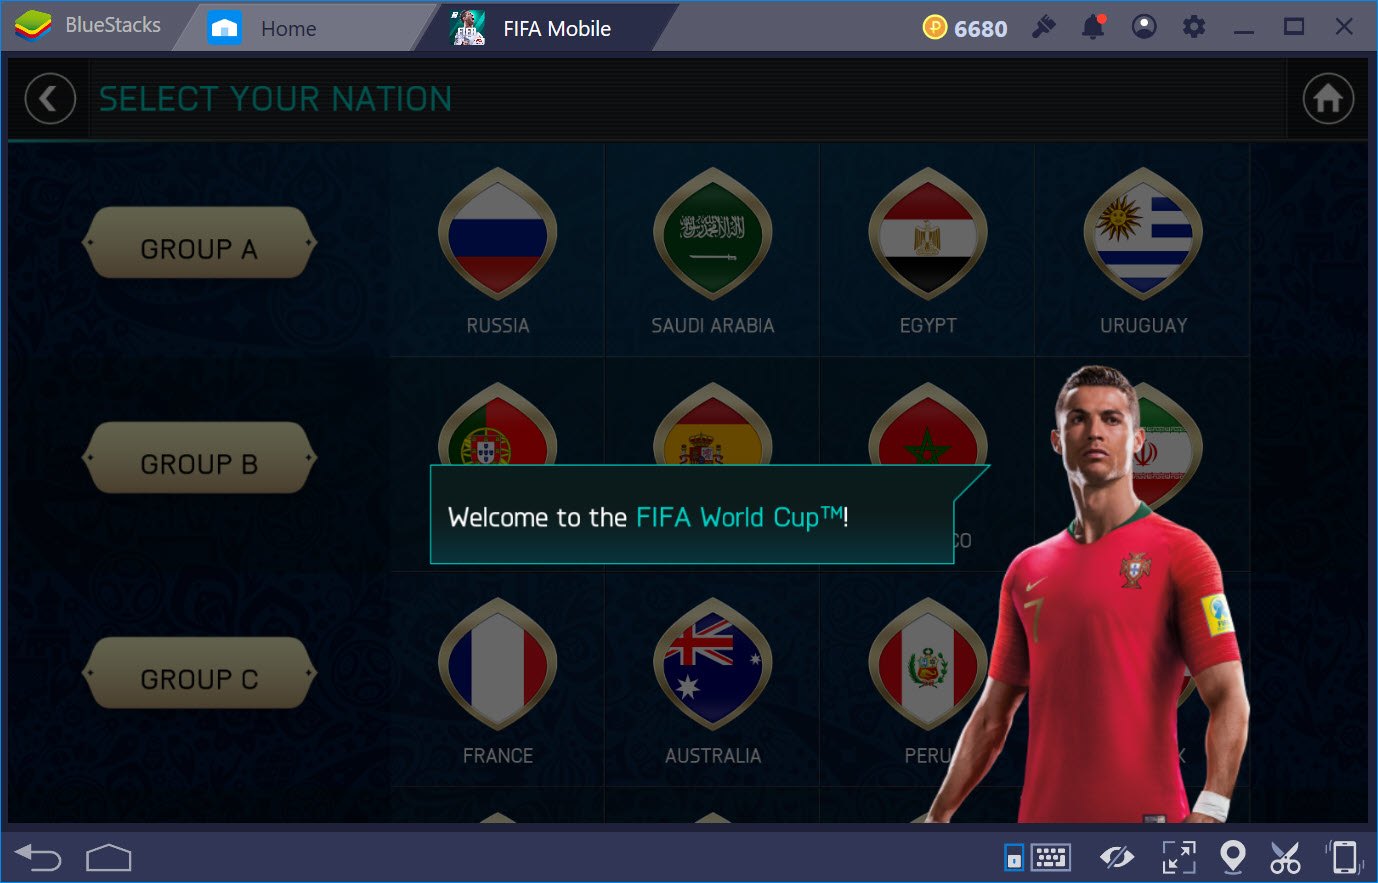 Tìm hiểu chế độ mới World Cup 2018 trong FIFA Mobile